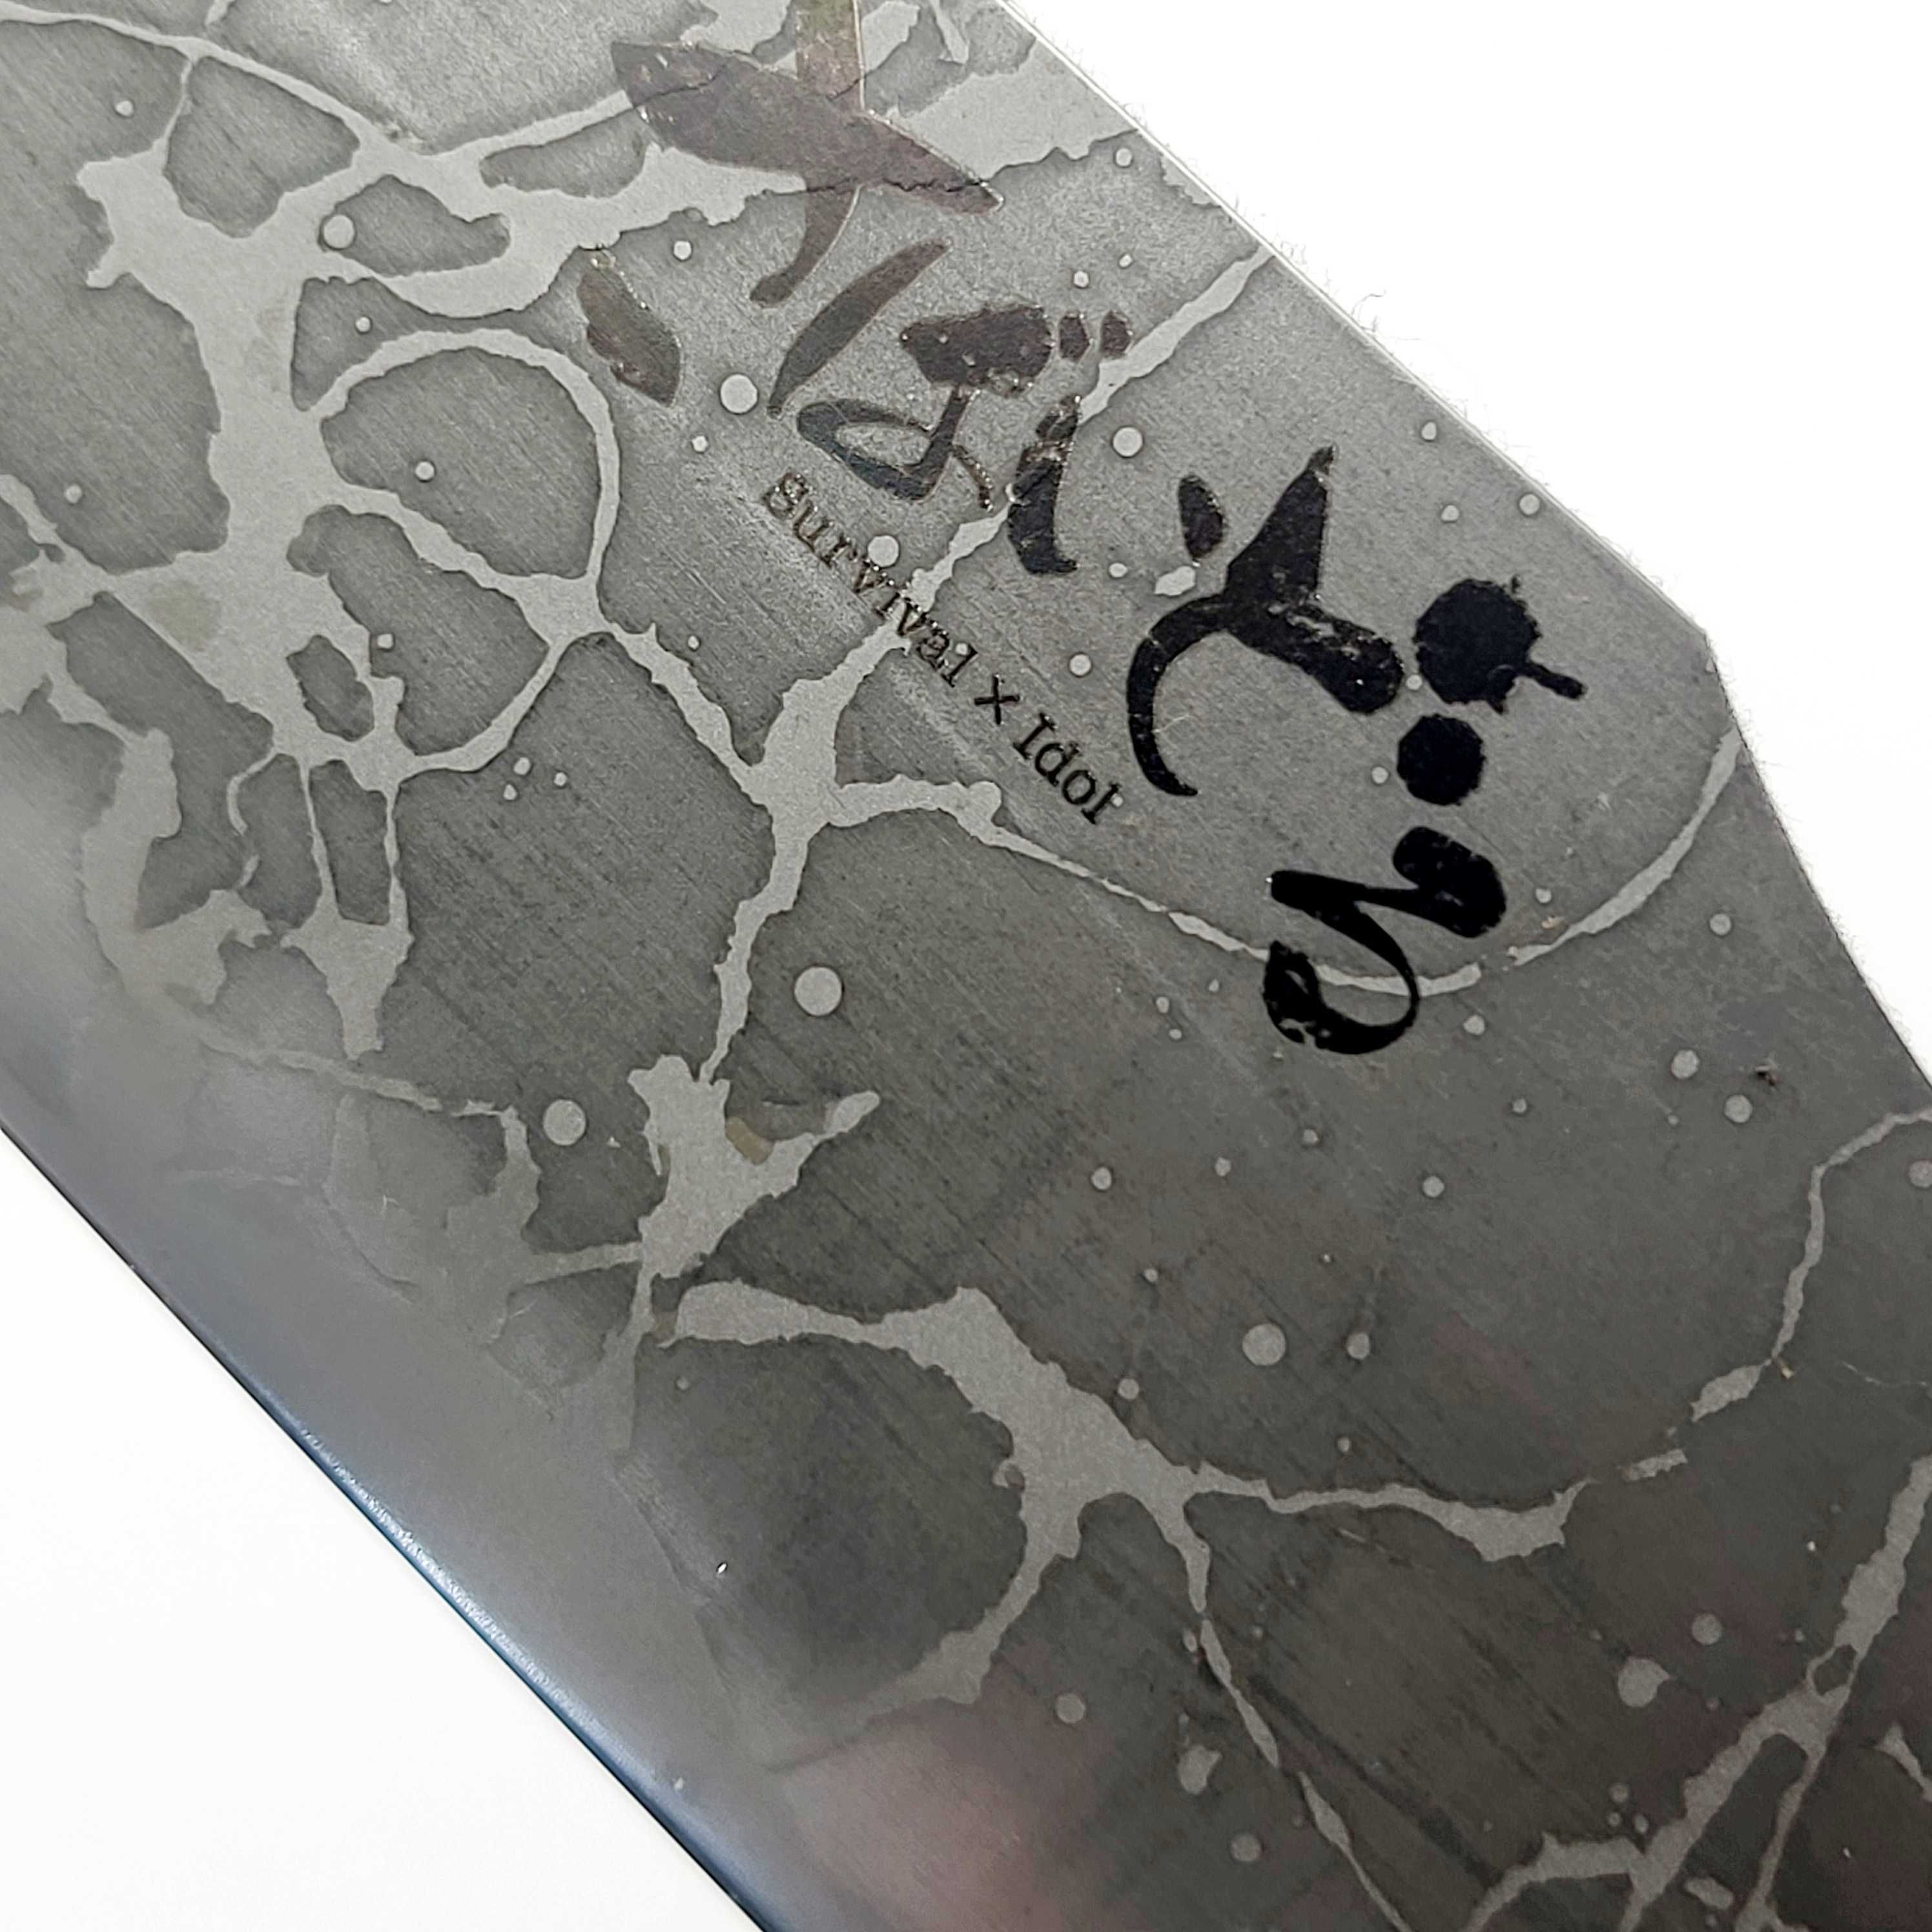 Japoński nóż survivalowy Kiku Matsuda Survidol LARGE KM10